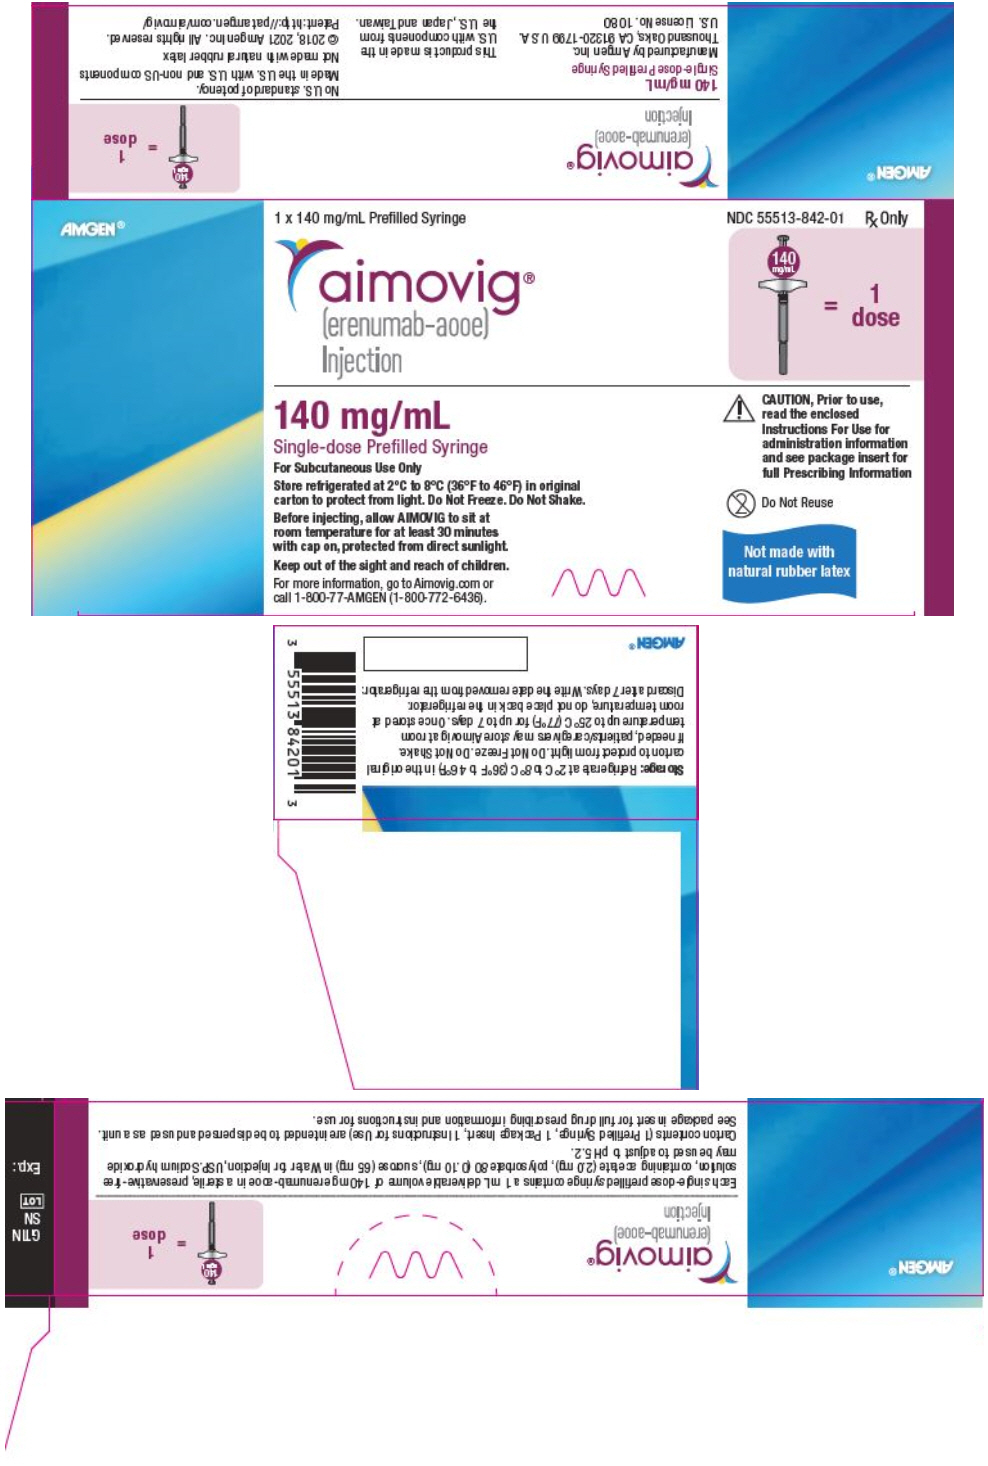 PRINCIPAL DISPLAY PANEL - 140 mg/mL Syringe Carton